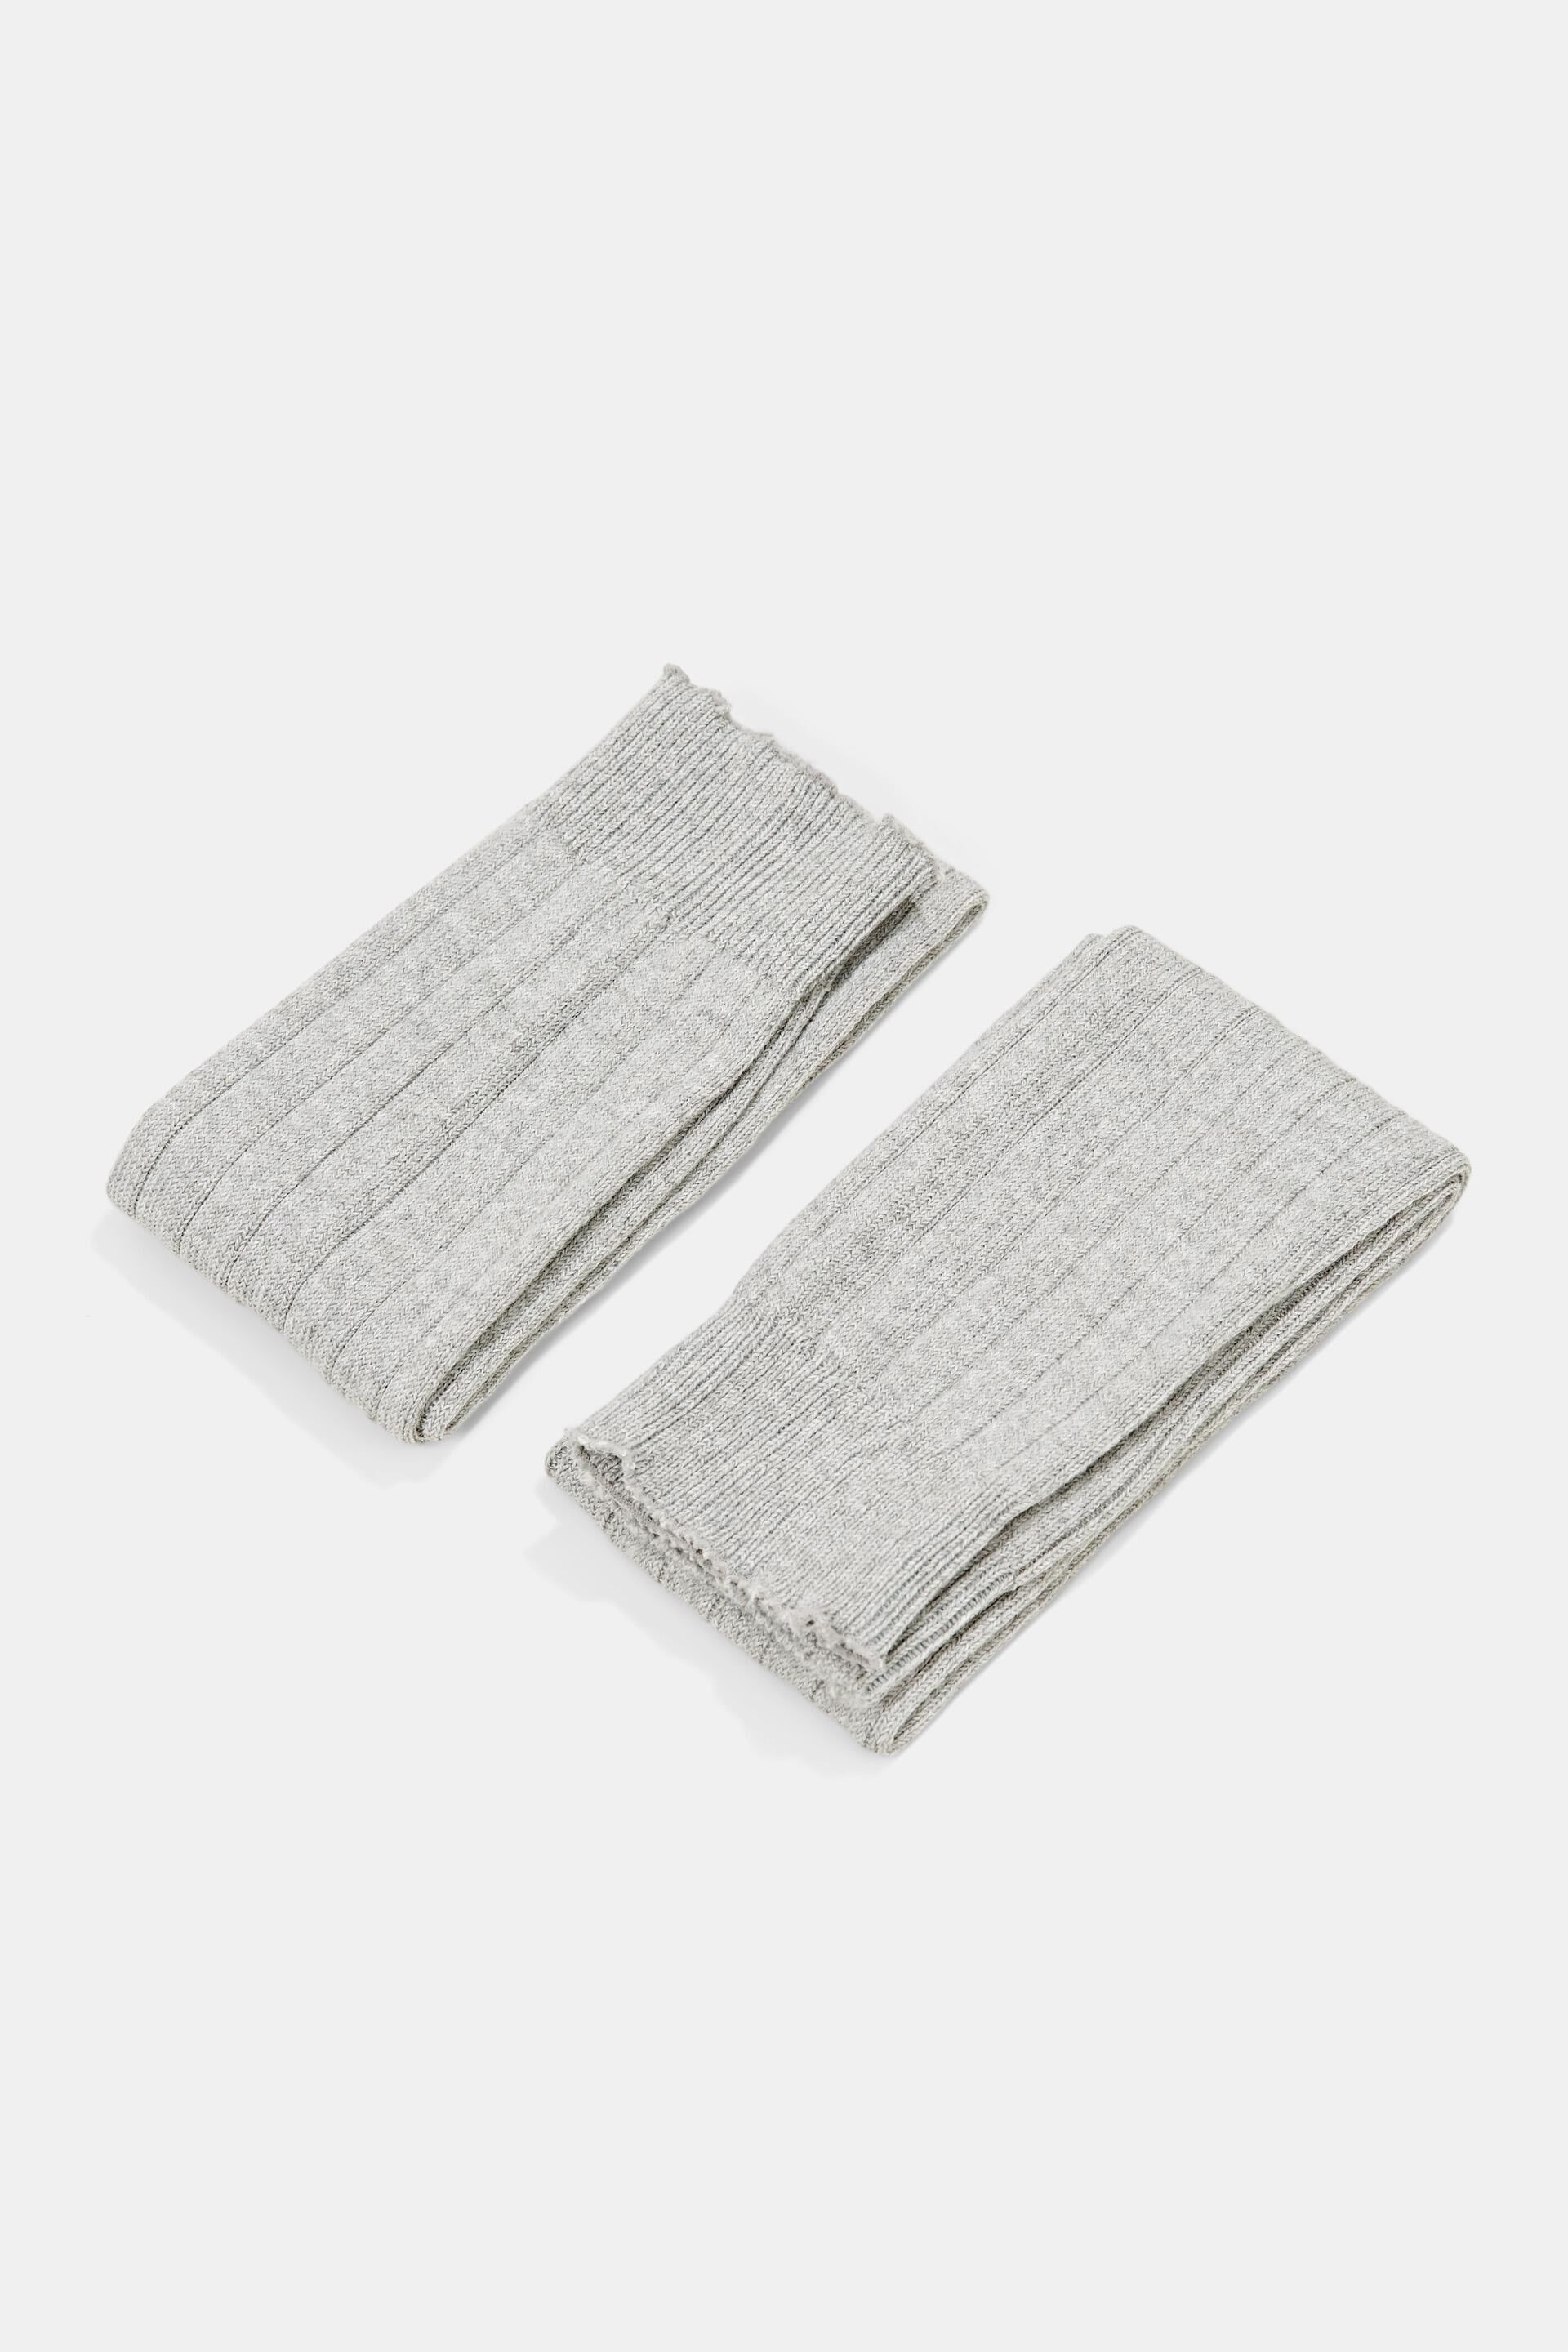 Esprit Wool rib warmers knit blend: leg